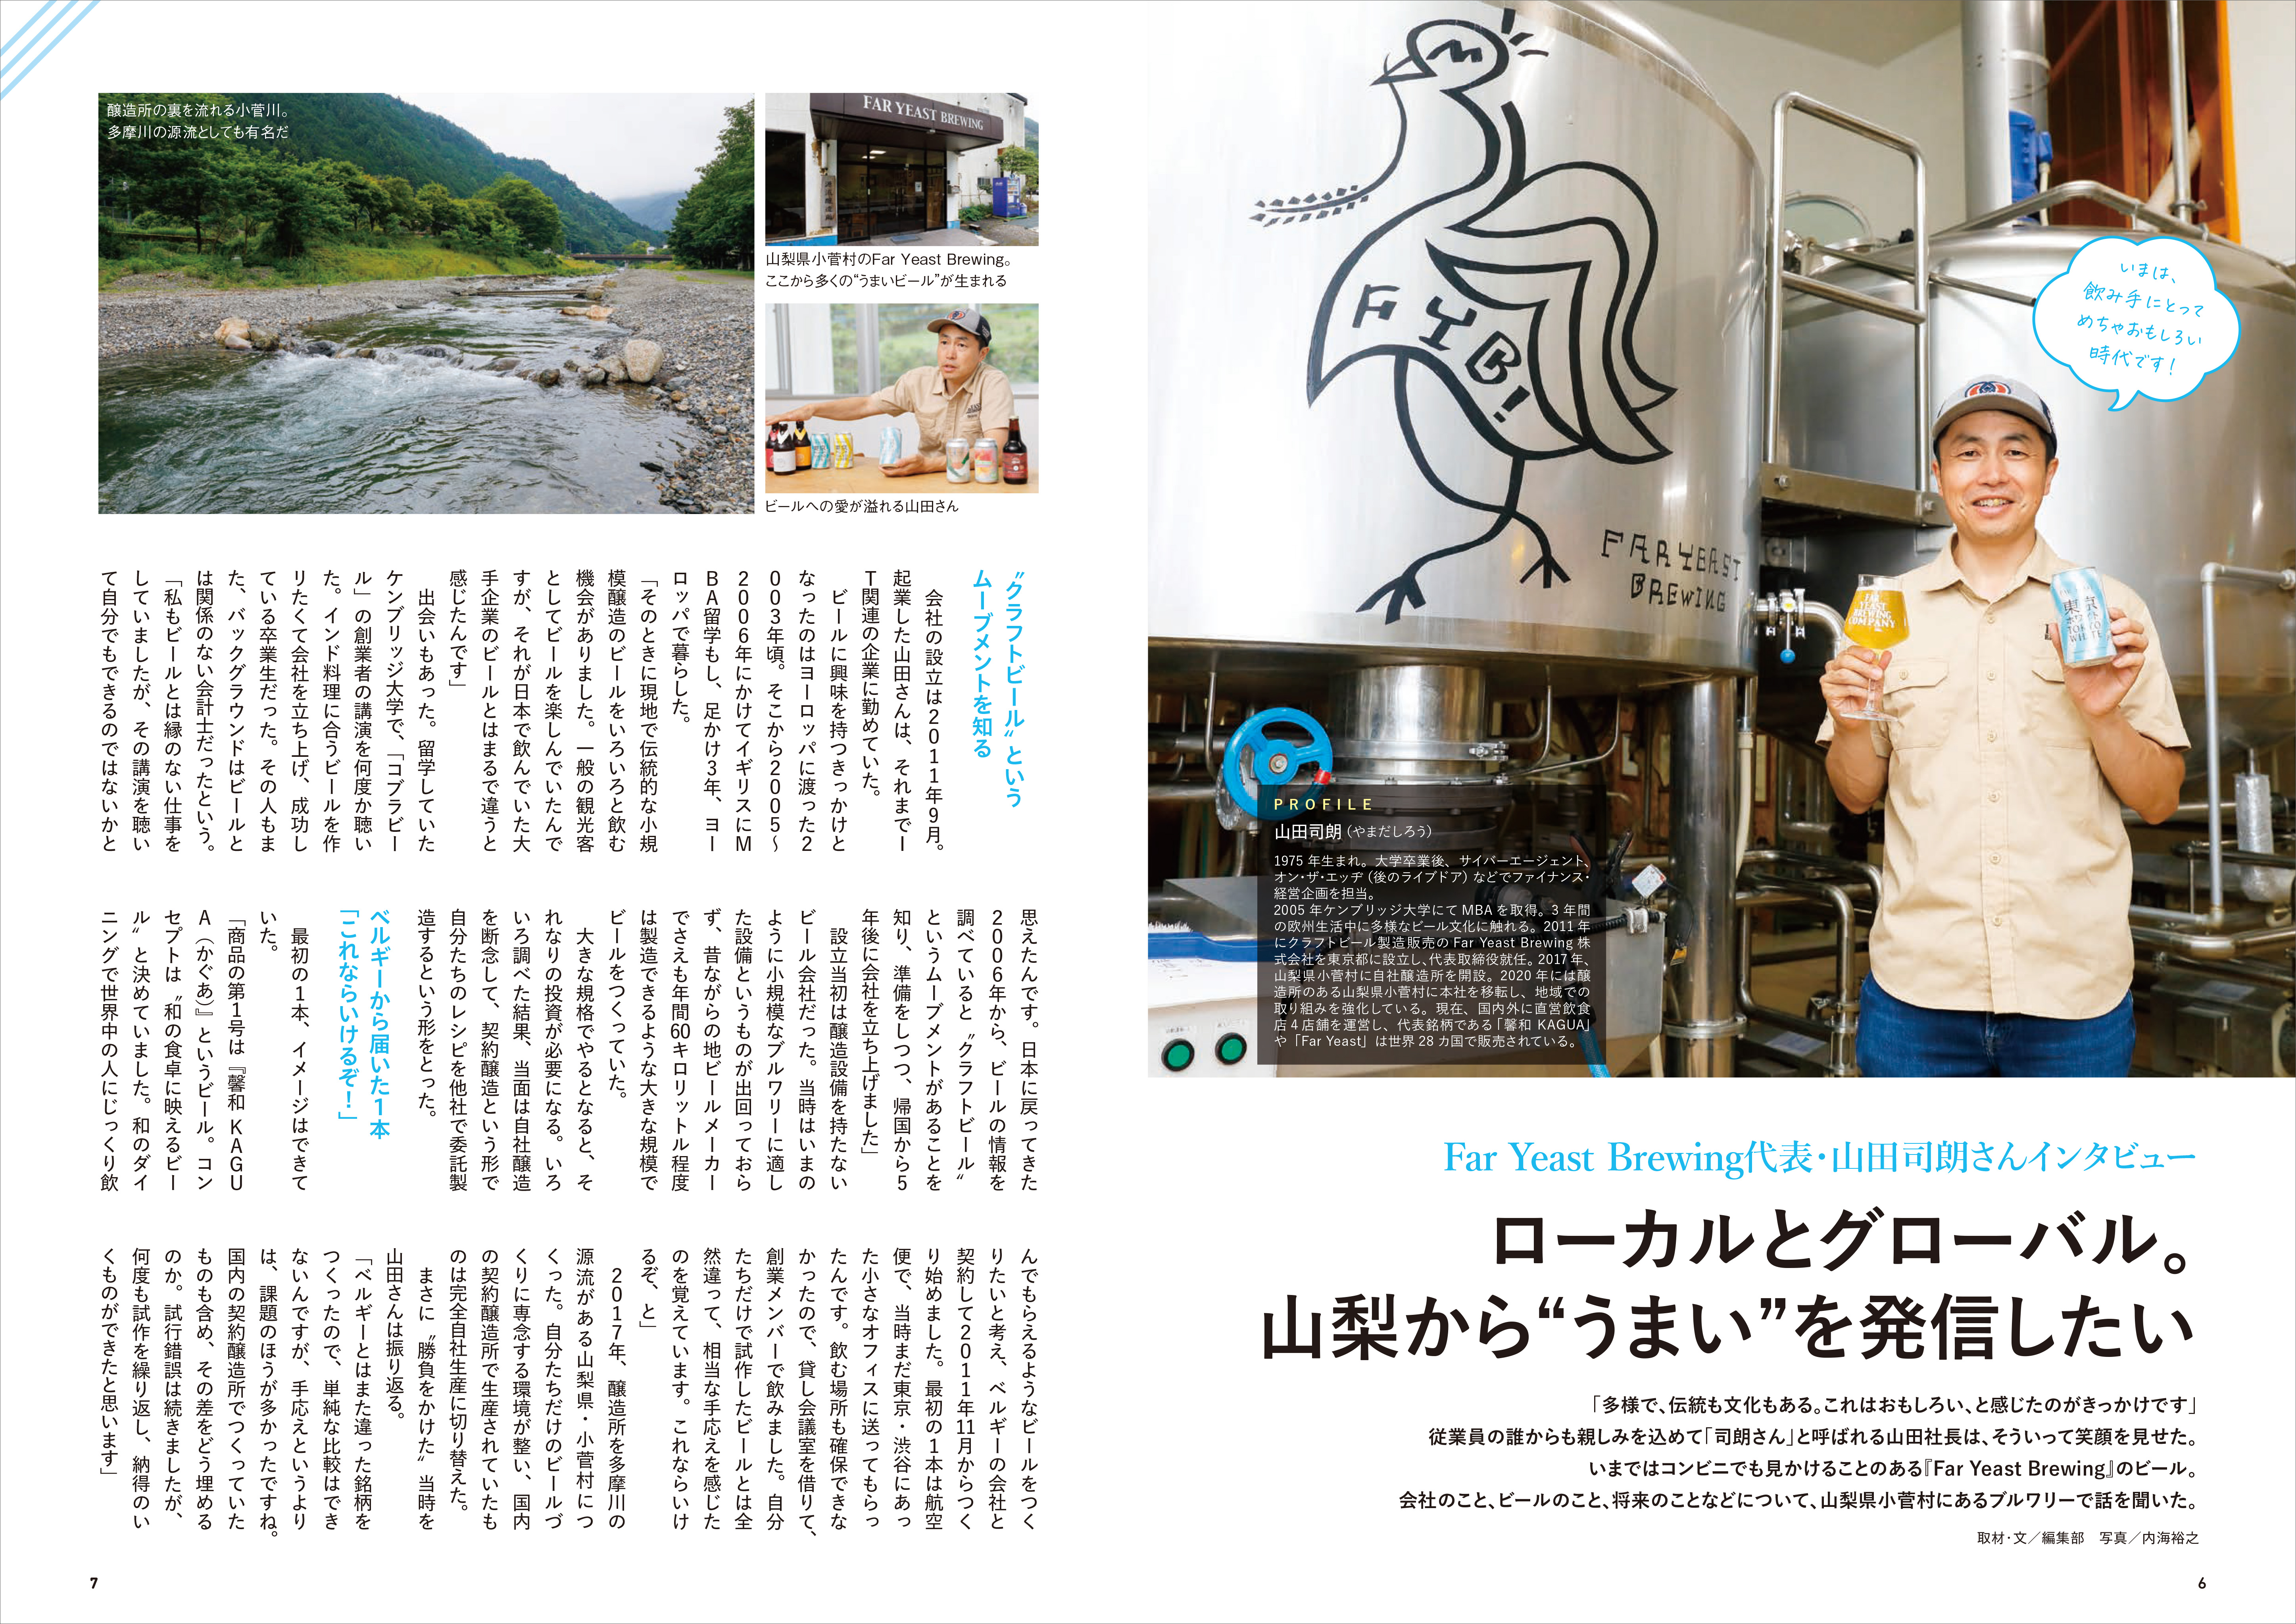 「いま注目のブルワリー、Far Yeast Brewing代表の山田司朗さんにインタビュー」紙面